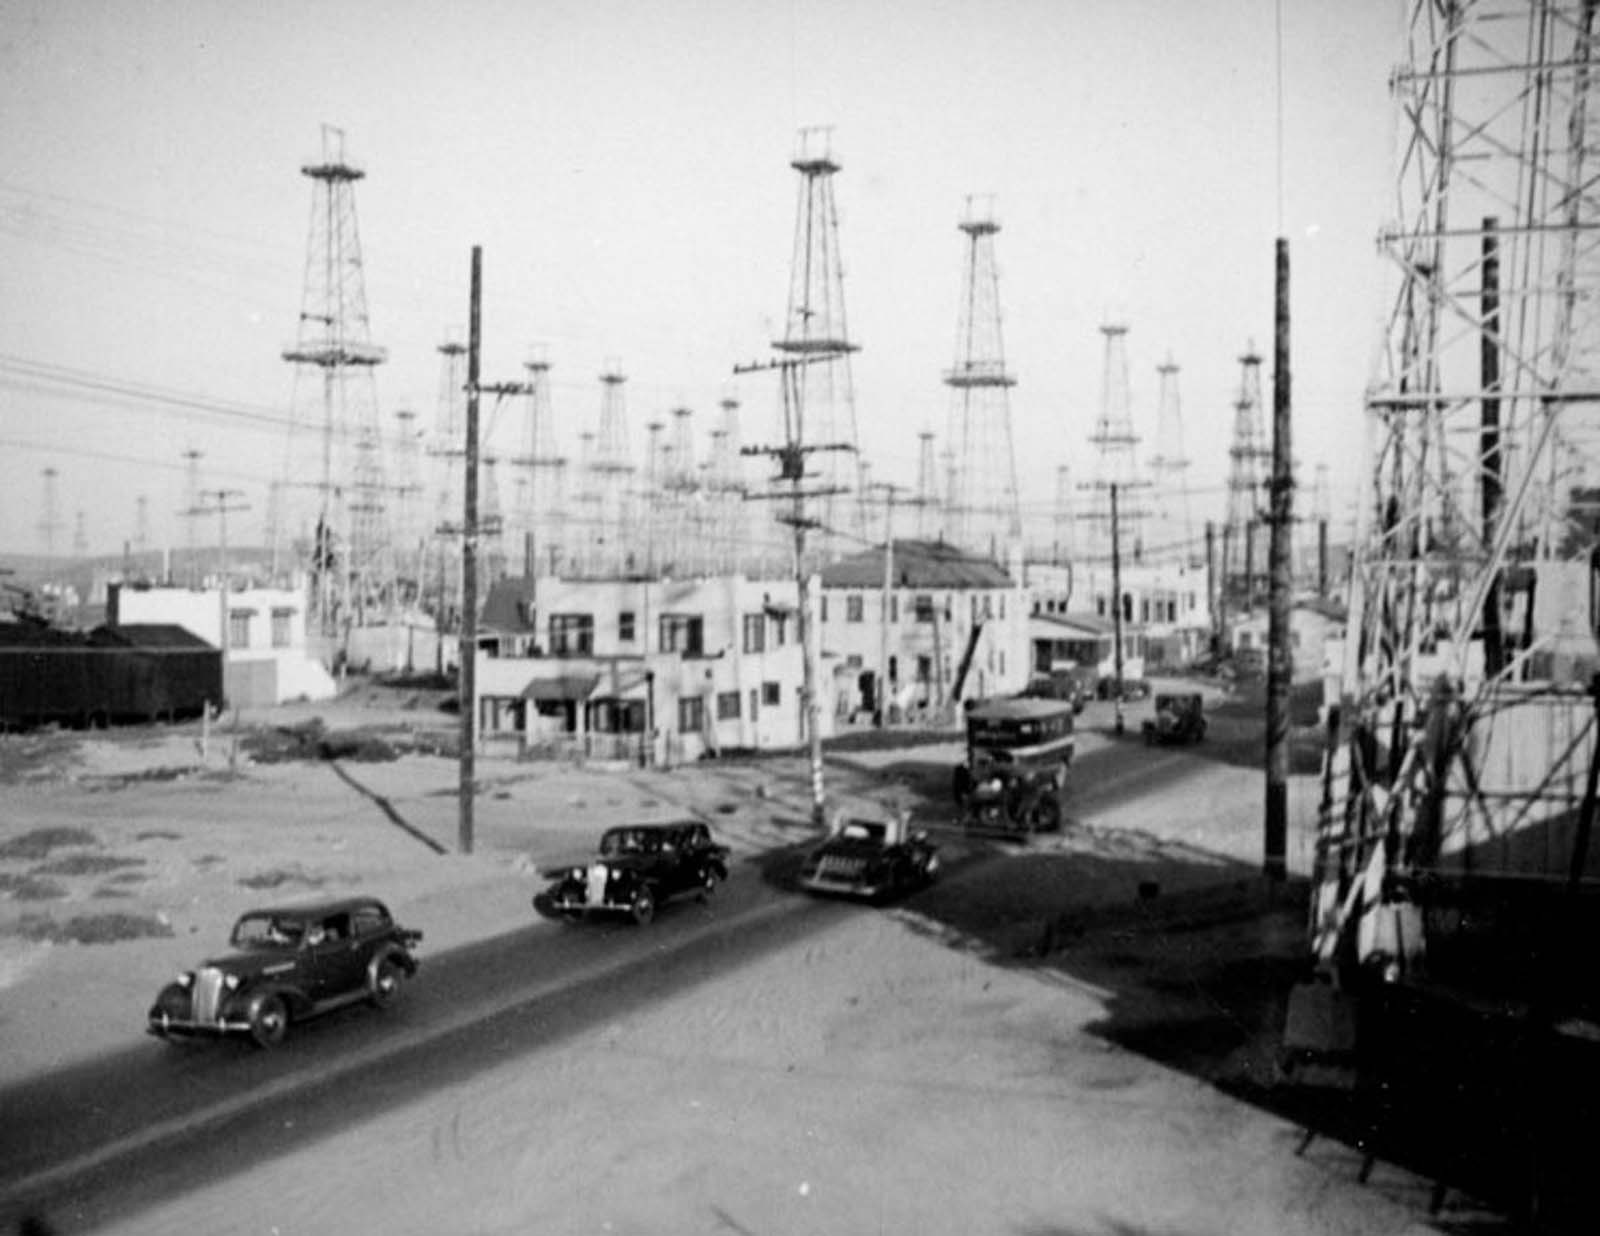 Cars travel through the Venice oilfield, 1937